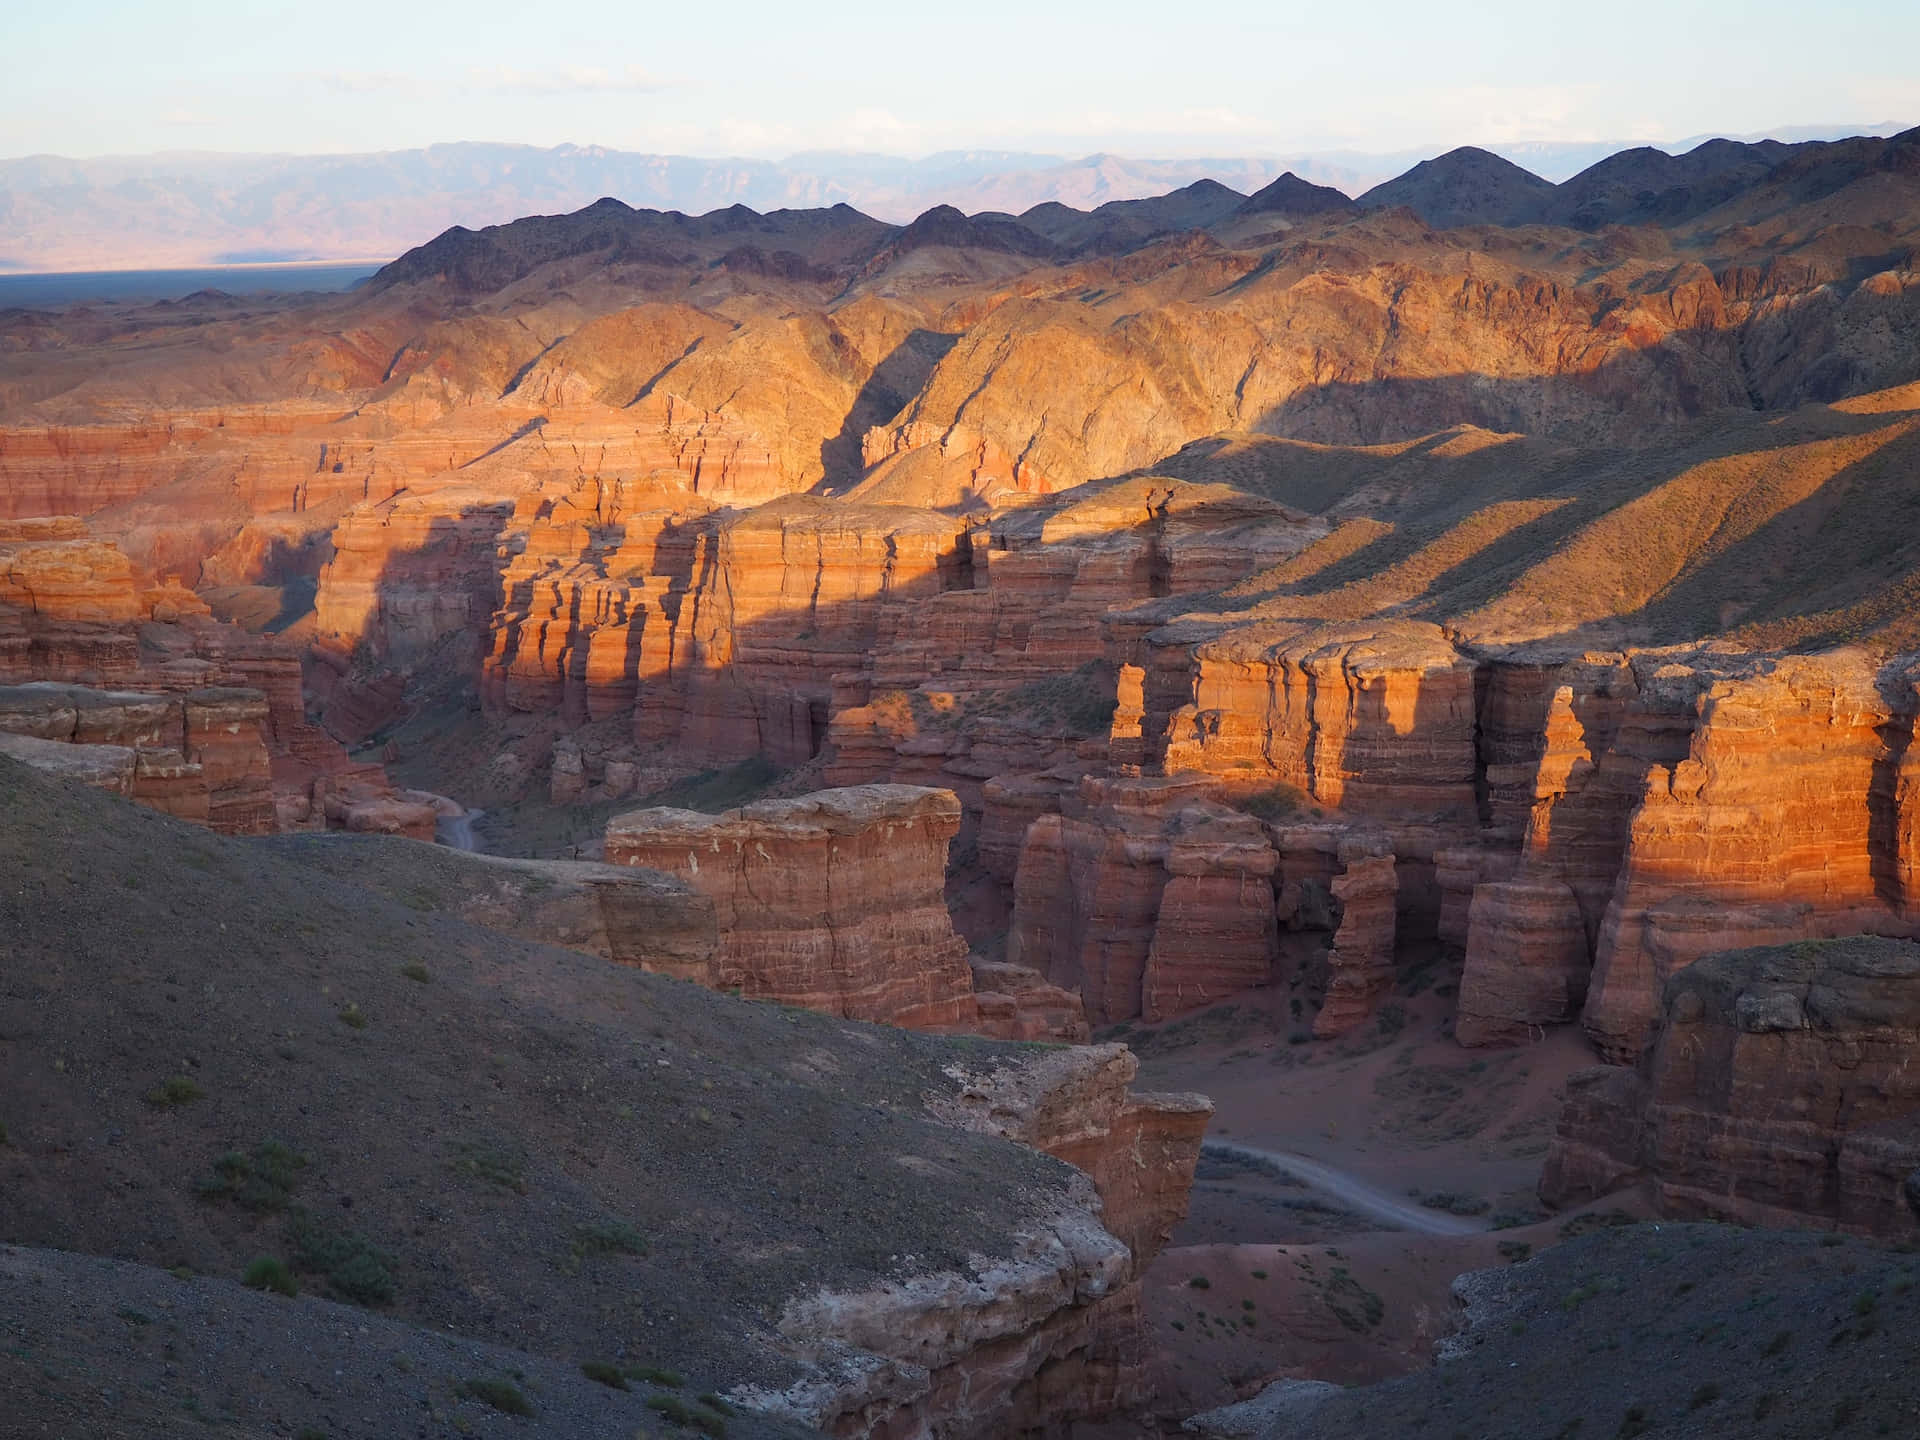 Besternaturhintergrund Des Charyn Canyon In Kasachstan